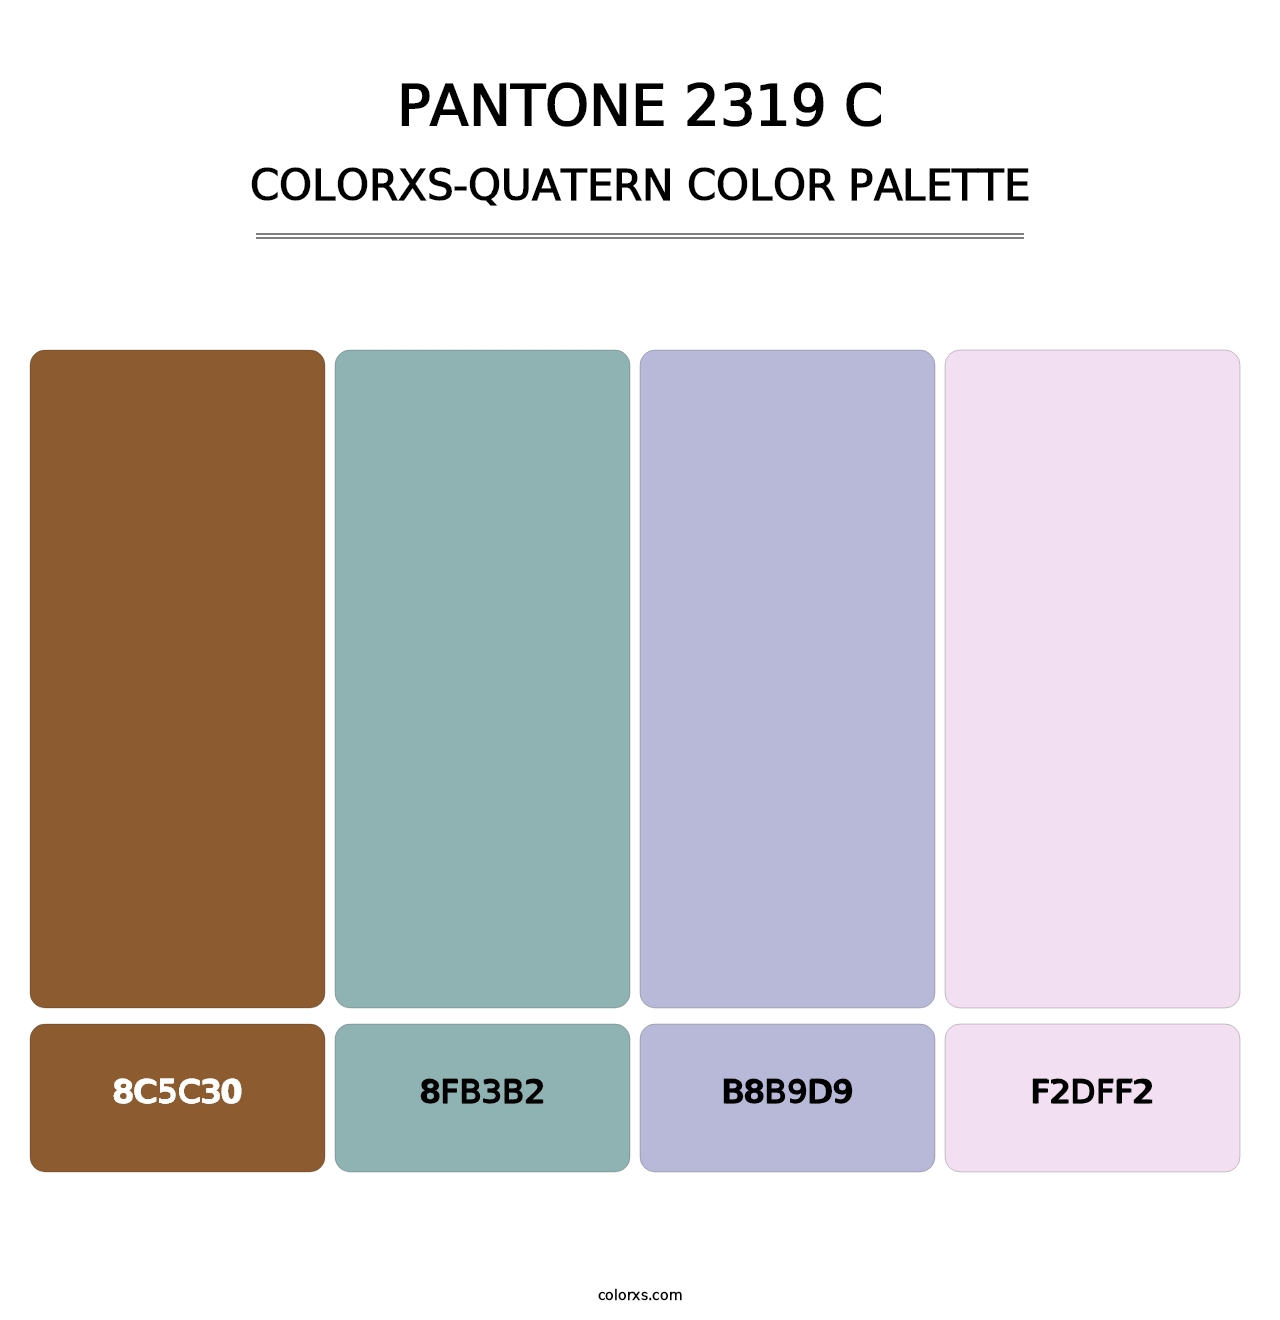 PANTONE 2319 C - Colorxs Quatern Palette